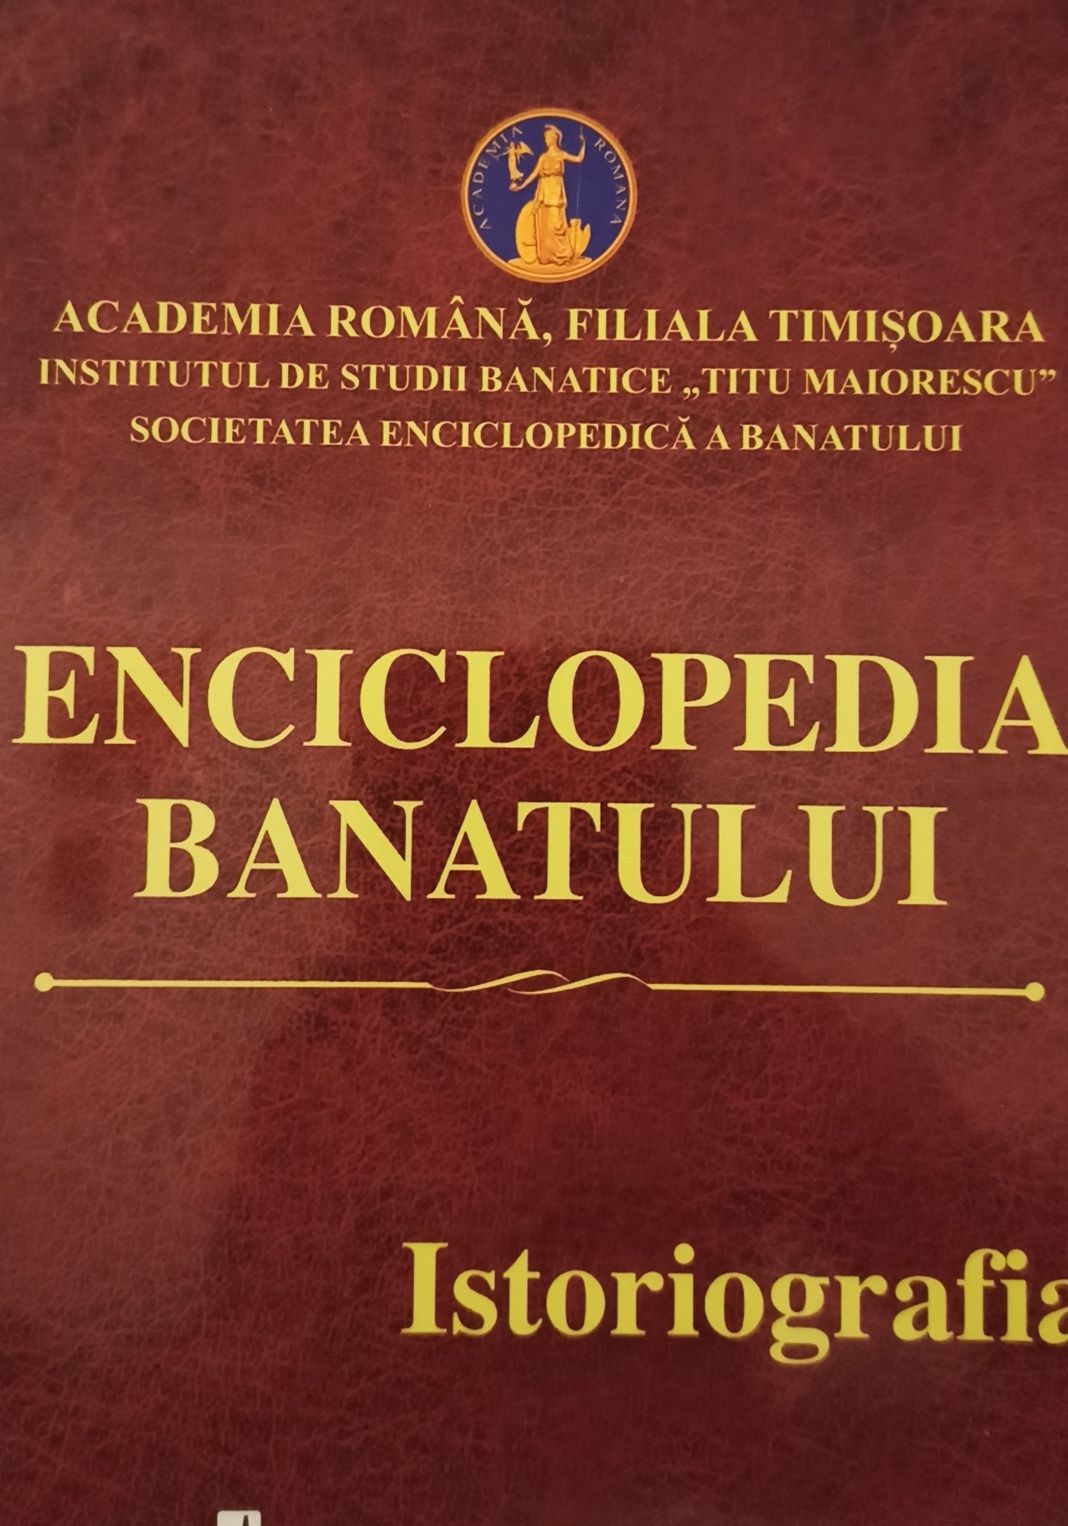 Enciclopedia Banatului- Dumitru Tomoni, Academia Romana. Impecabil!